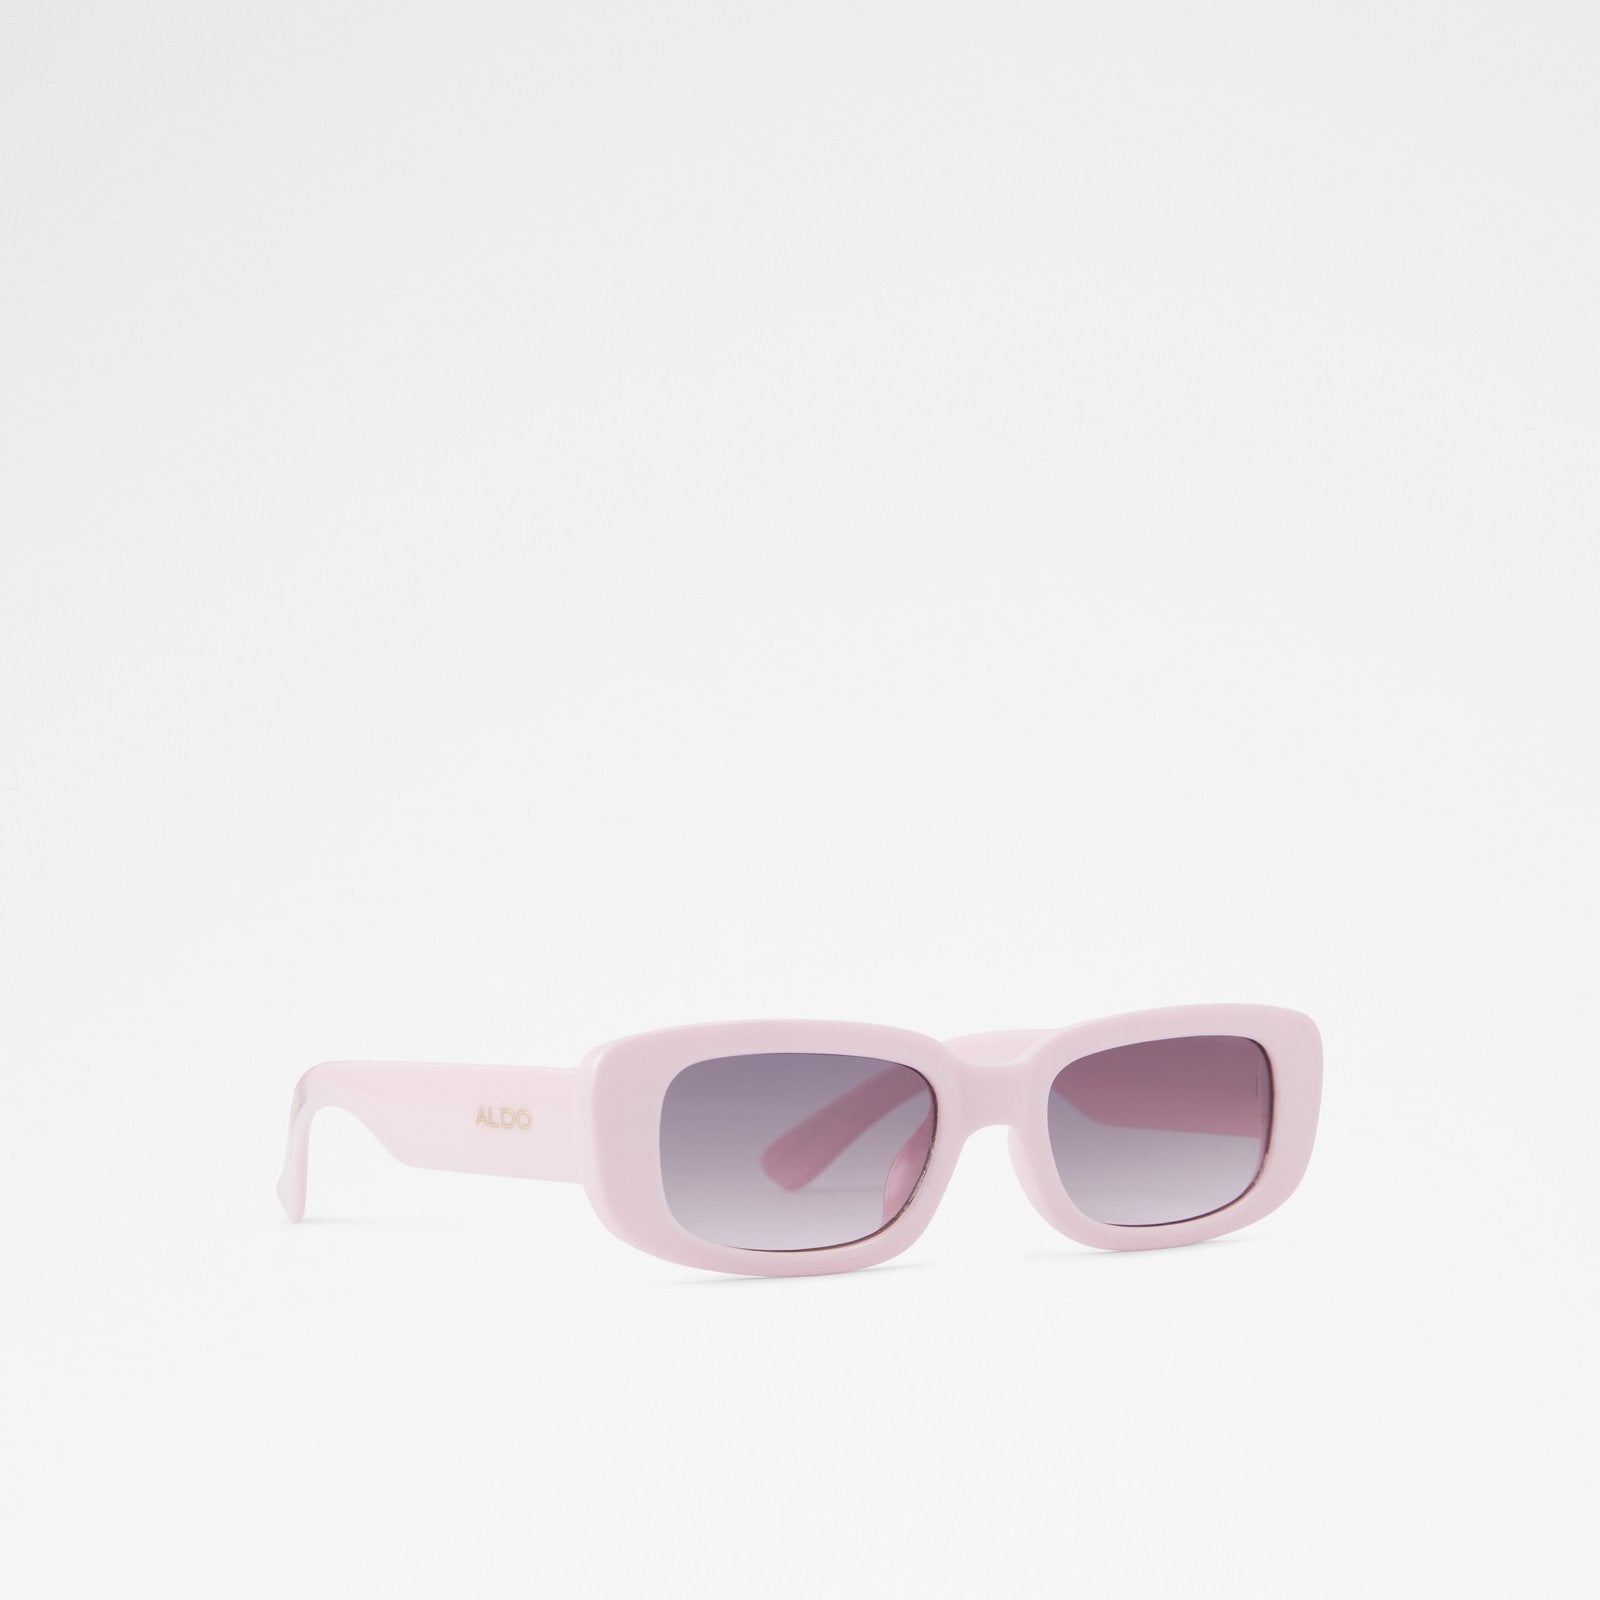 Derradan Accessory - Medium Pink - ALDO KSA